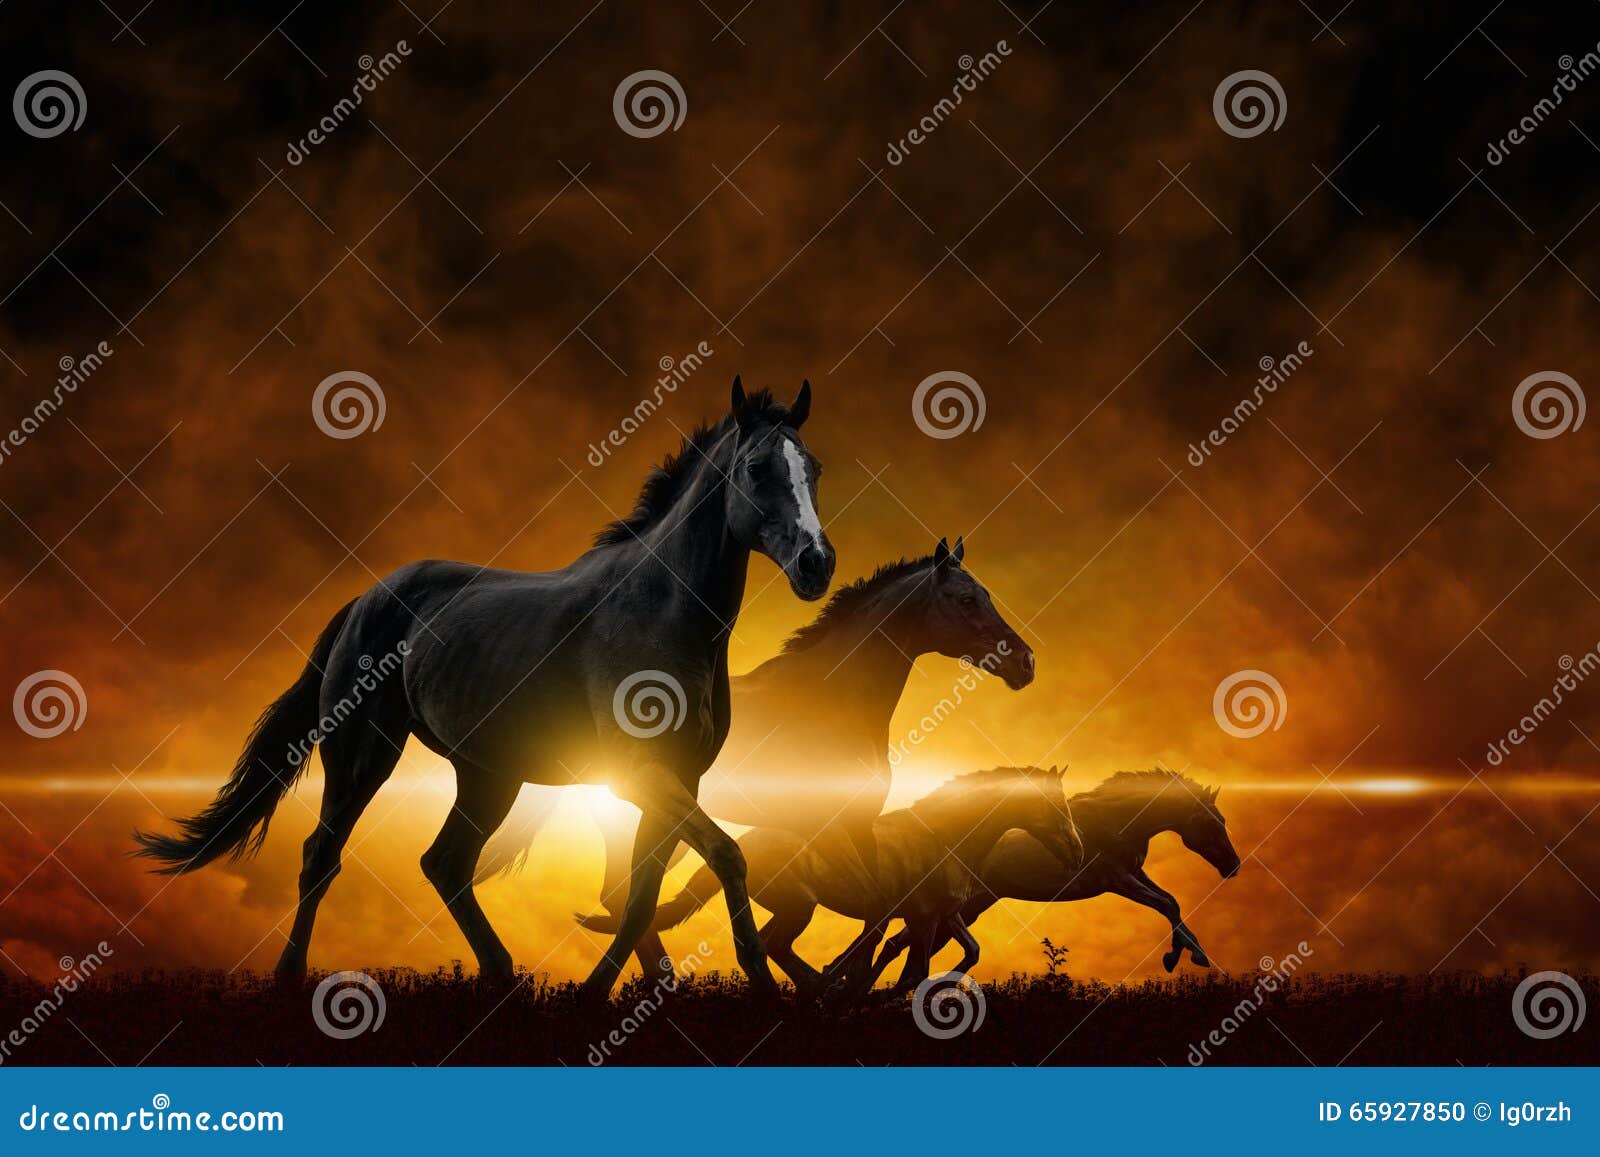 four running black horses